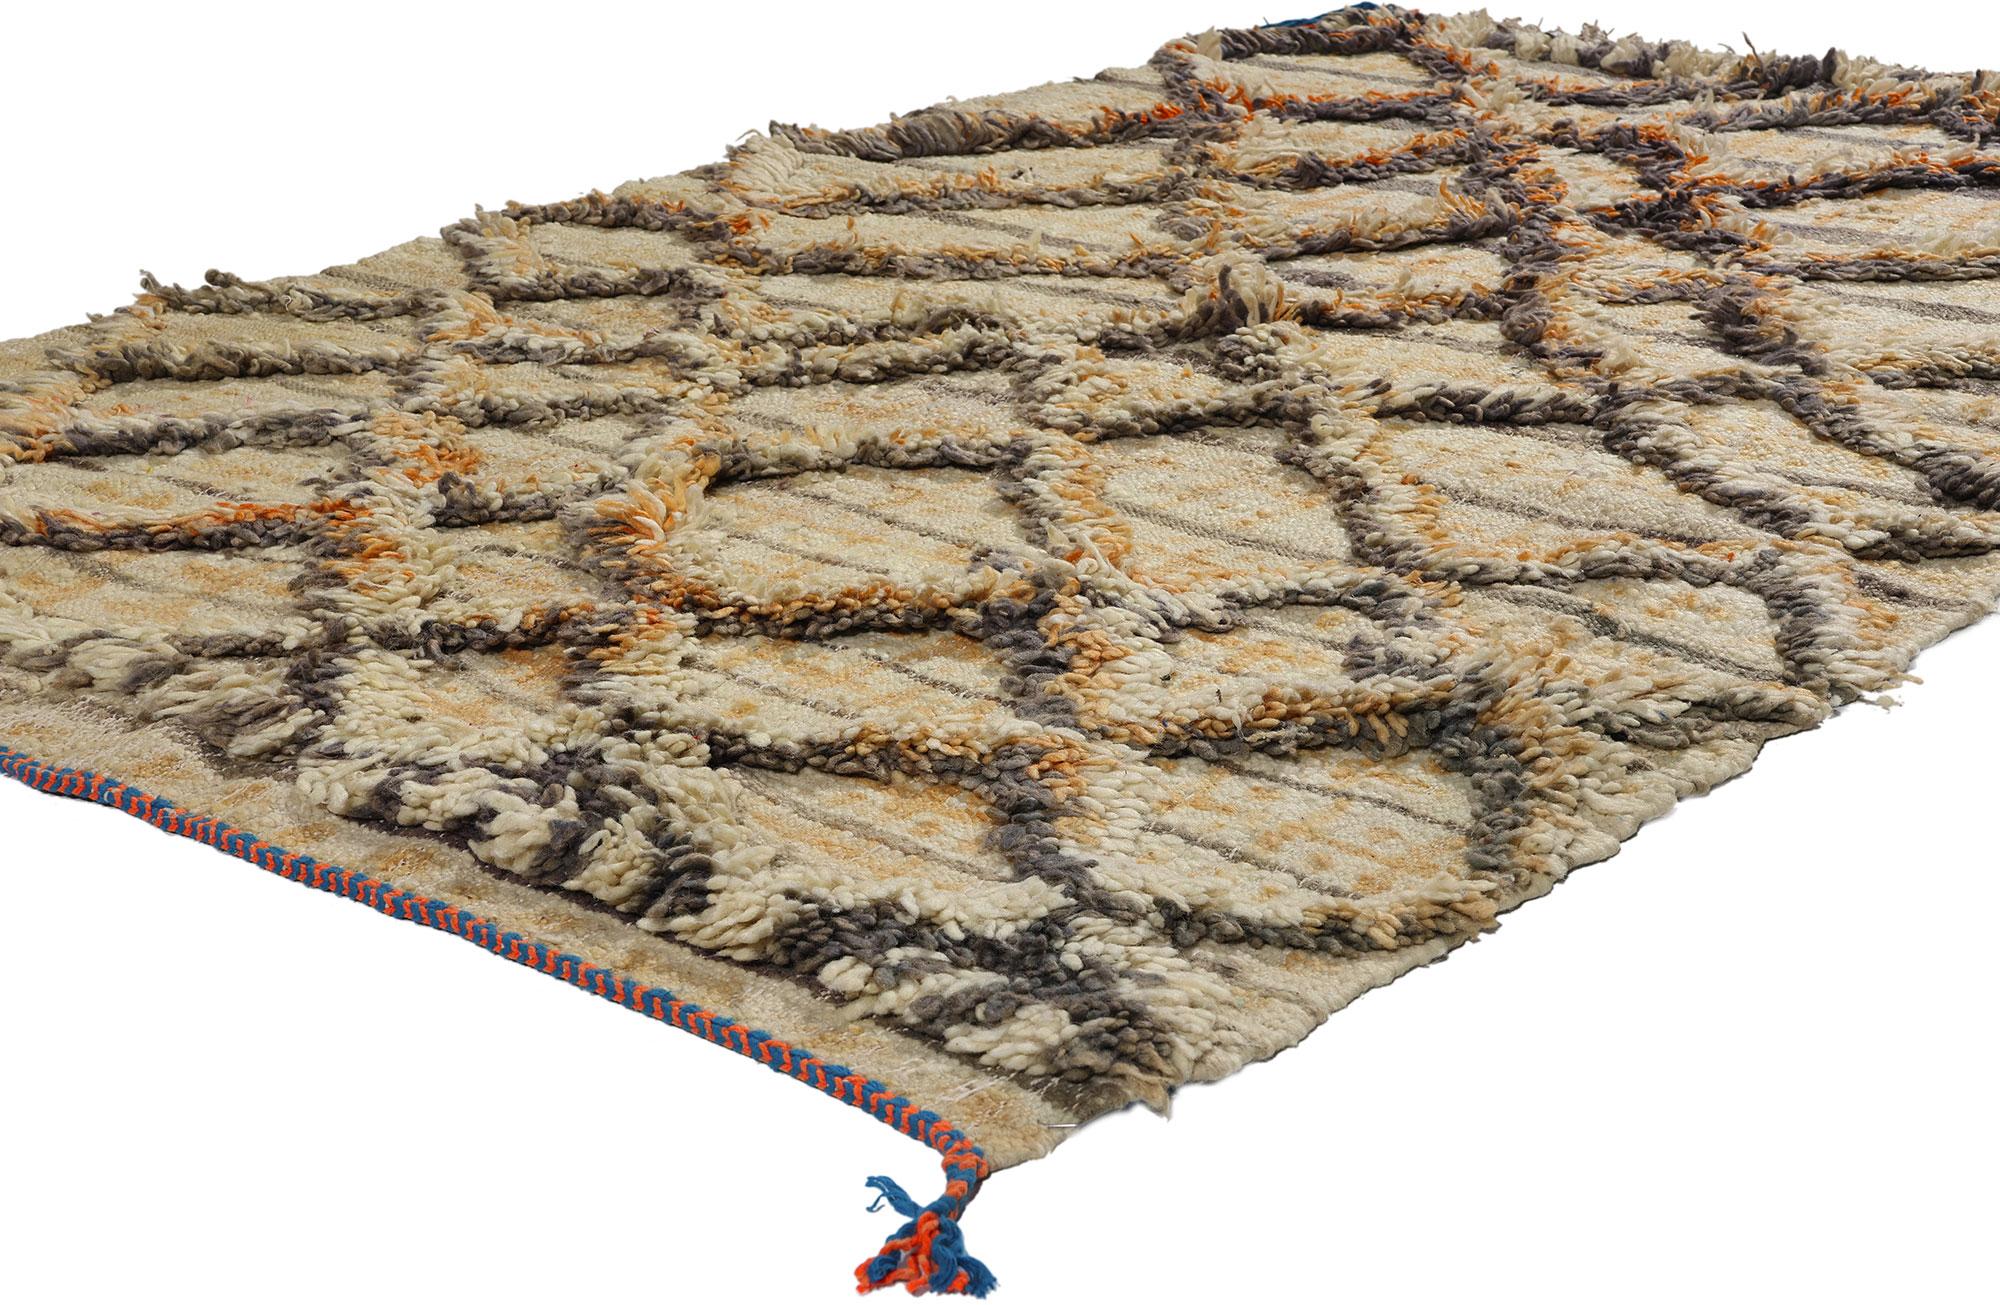 21744 Vintage Marokkanischer Azilal-Teppich mit hohem und niedrigem Flor, 04'01 x 06'09. Begeben Sie sich auf eine bezaubernde Reise in das Reich der böhmischen Eleganz, während Sie jeden Schritt auf diesem exquisiten handgewebten marokkanischen